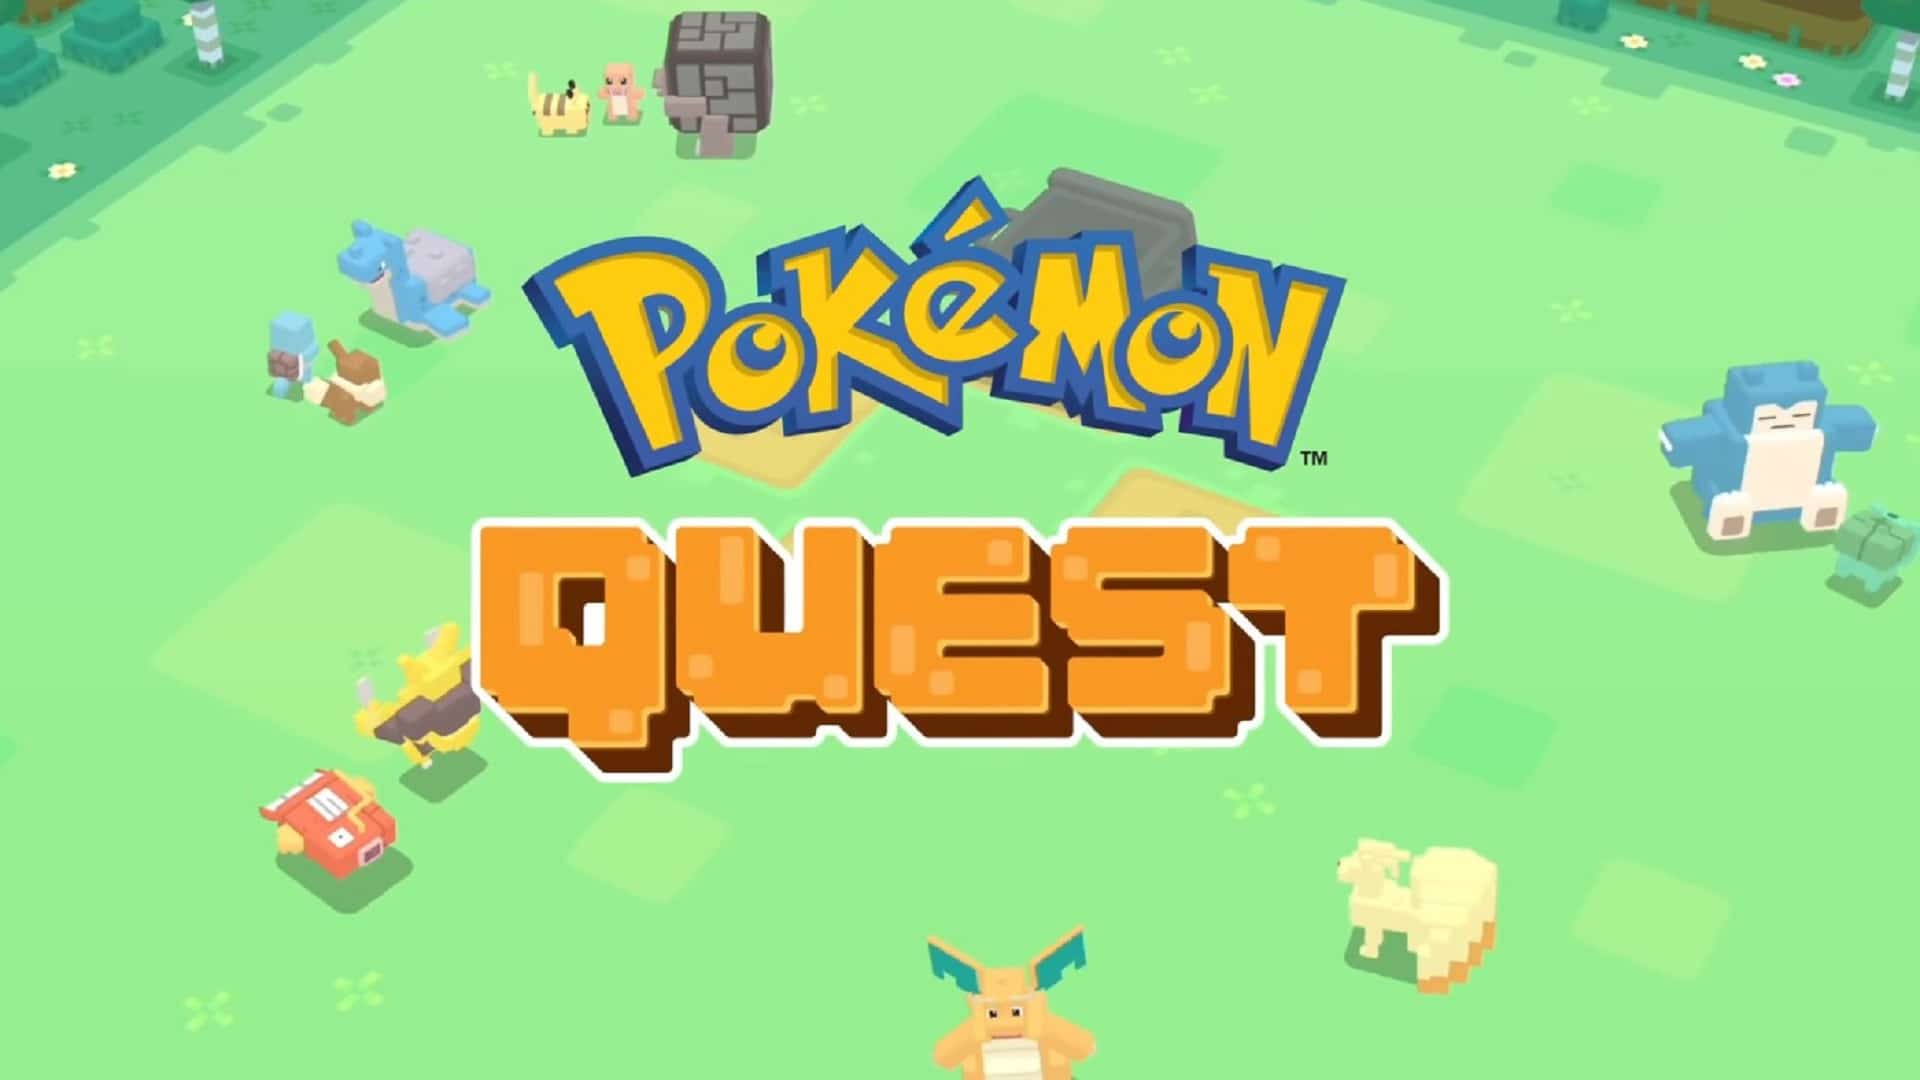 Pokémon Quest - Lista com todas as receitas